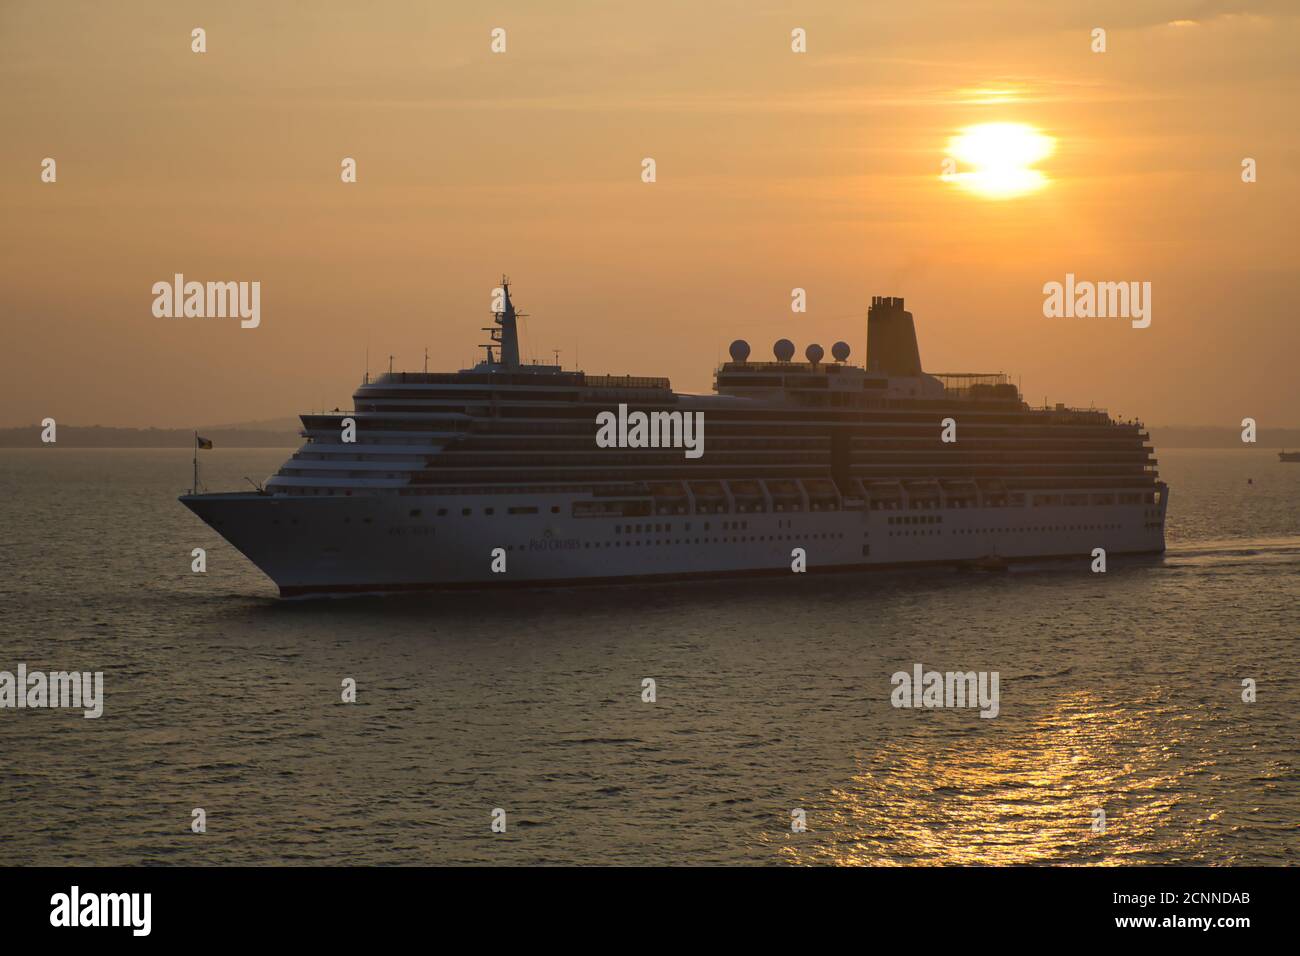 Ein Kreuzfahrtschiff, das bei Sonnenuntergang in den Hafen von Portsmouth segelt, wobei die untergehende Sonne einen Lichtweg auf der Wasseroberfläche mit dem Liner in Silhouette macht Stockfoto